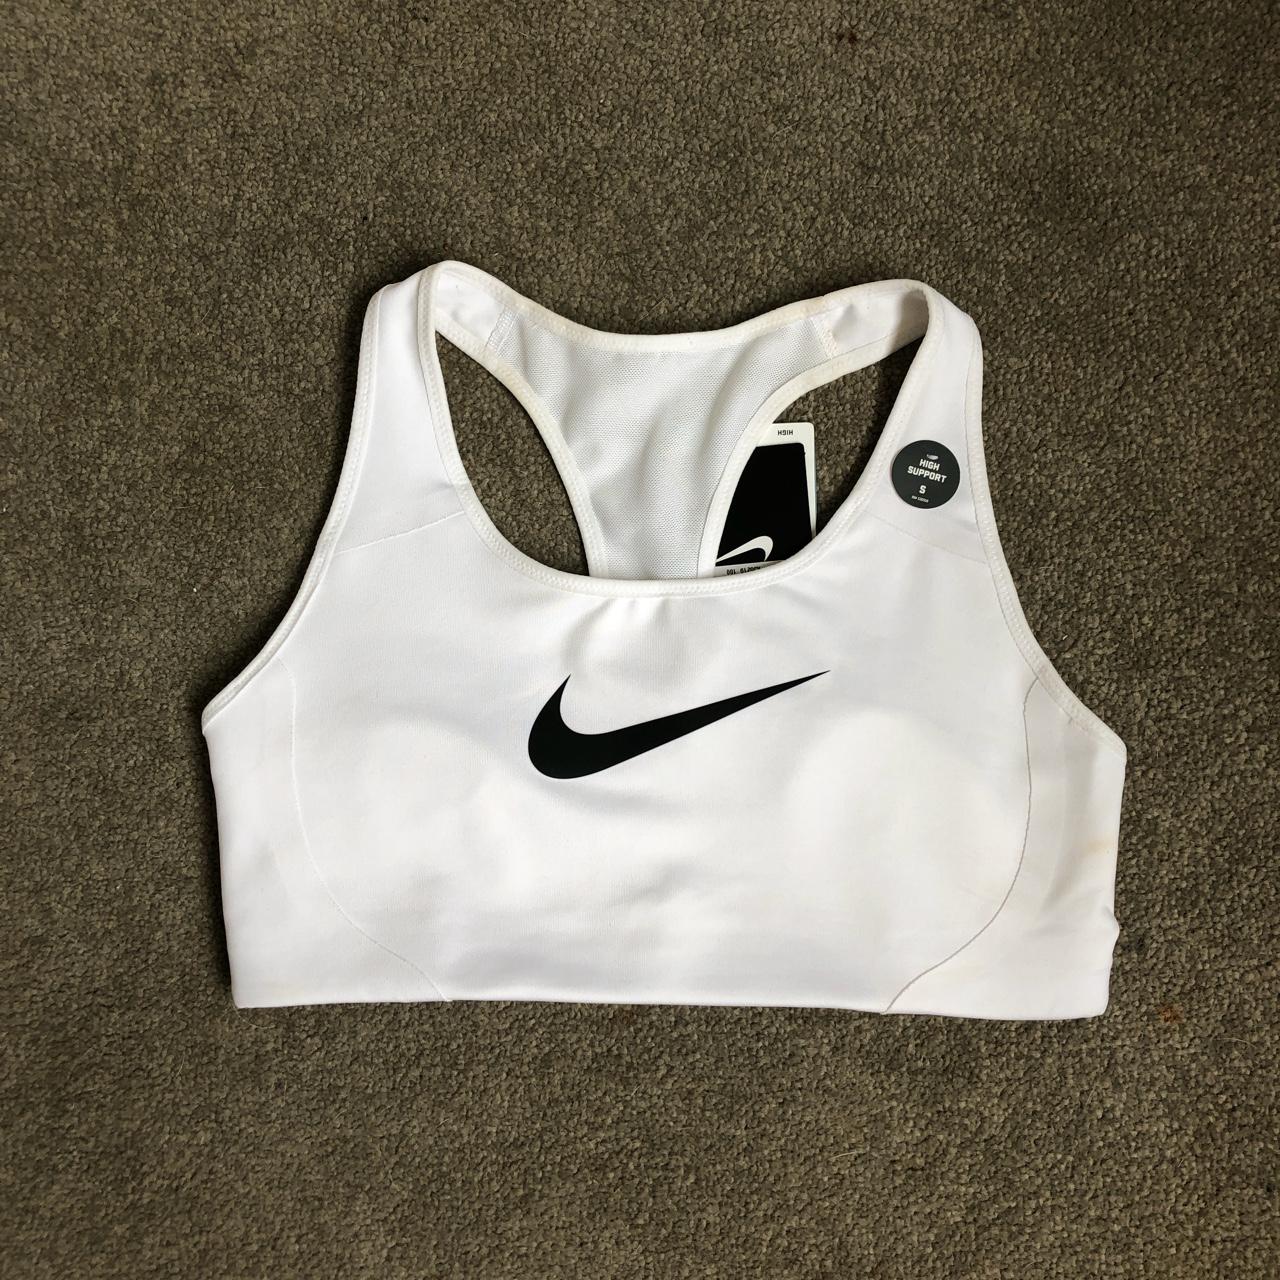 Nike sports bra Size S